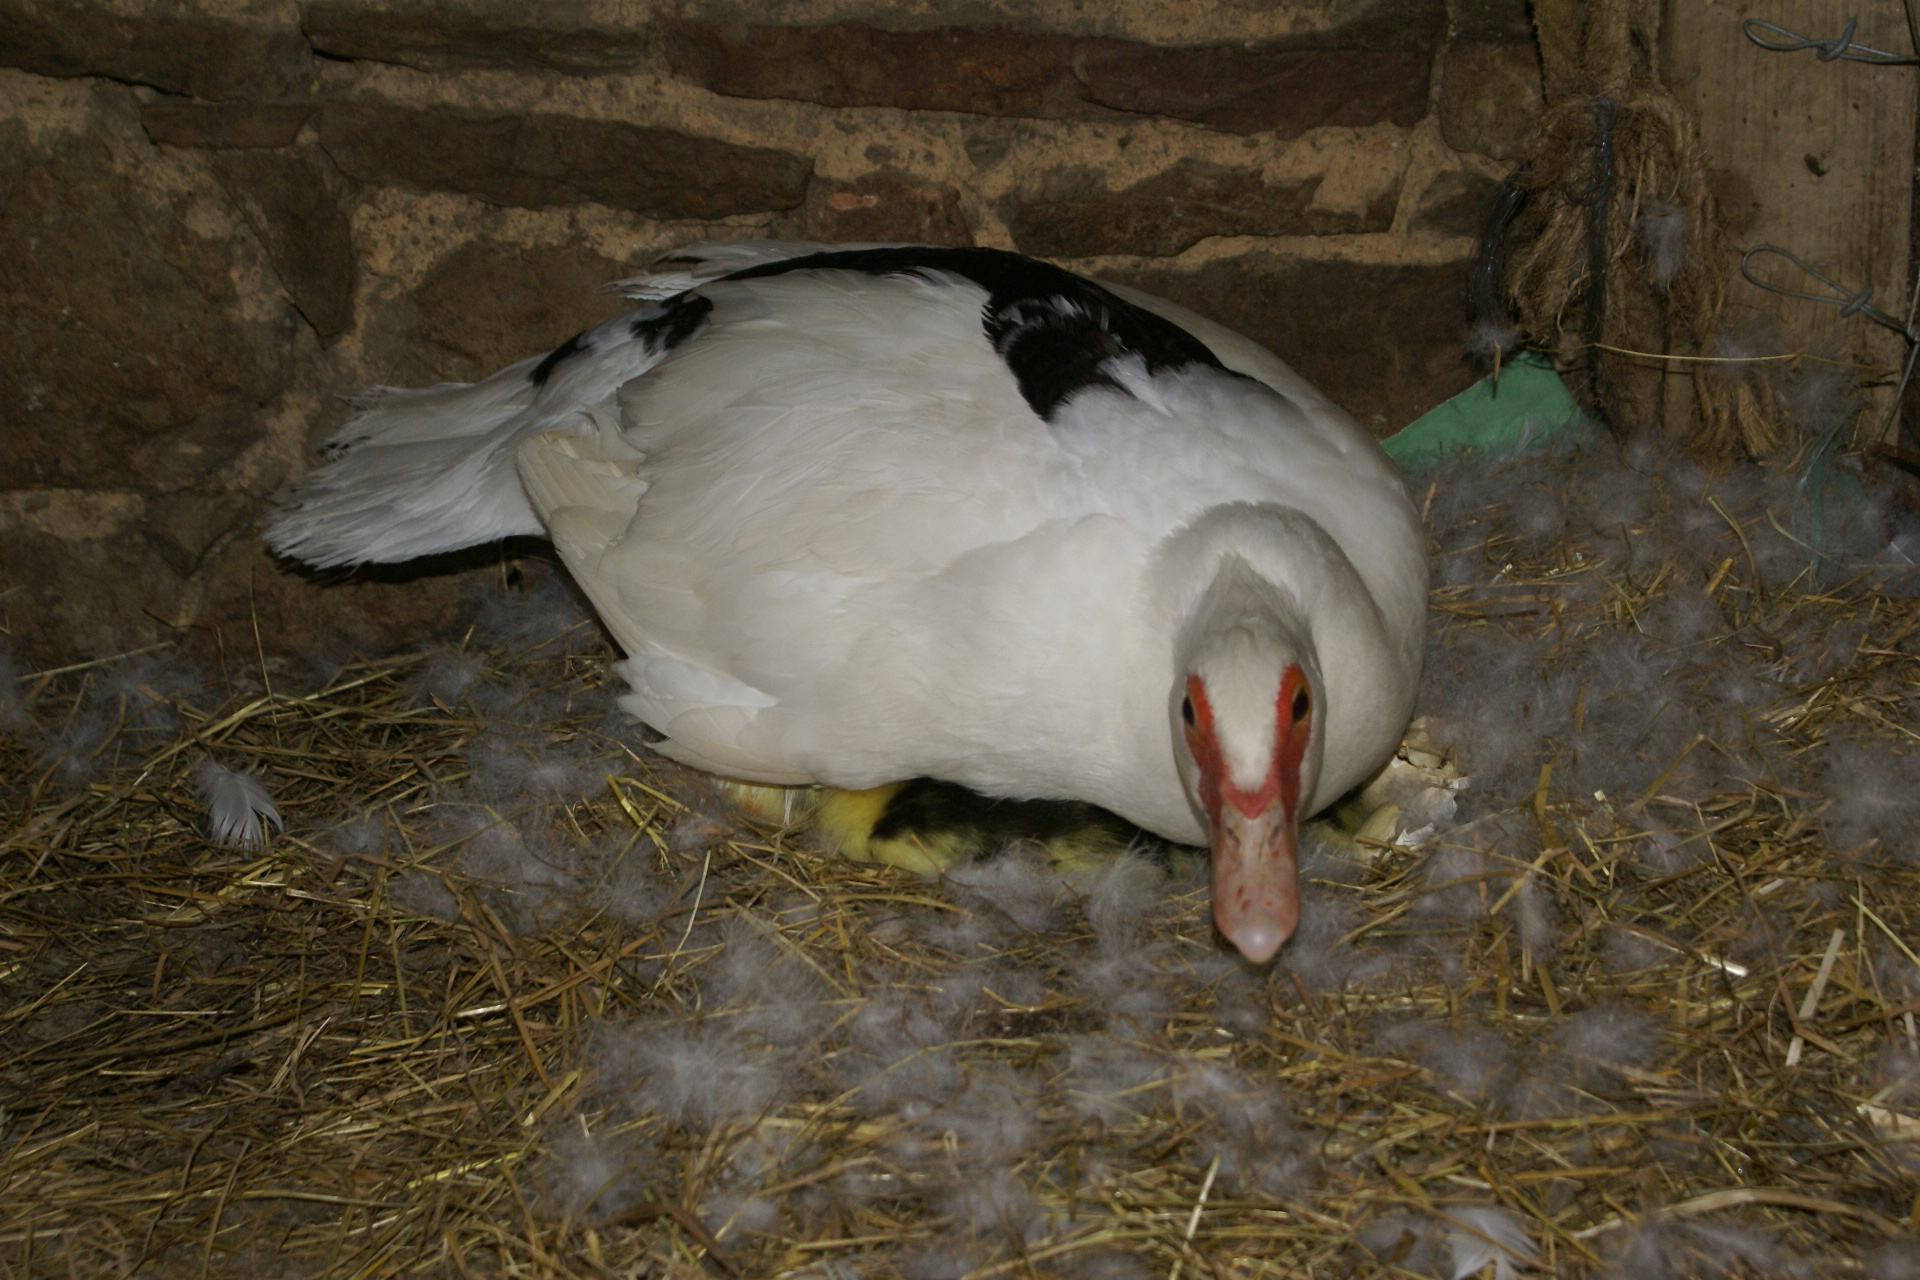 Ducklings hiding under Mother Duck